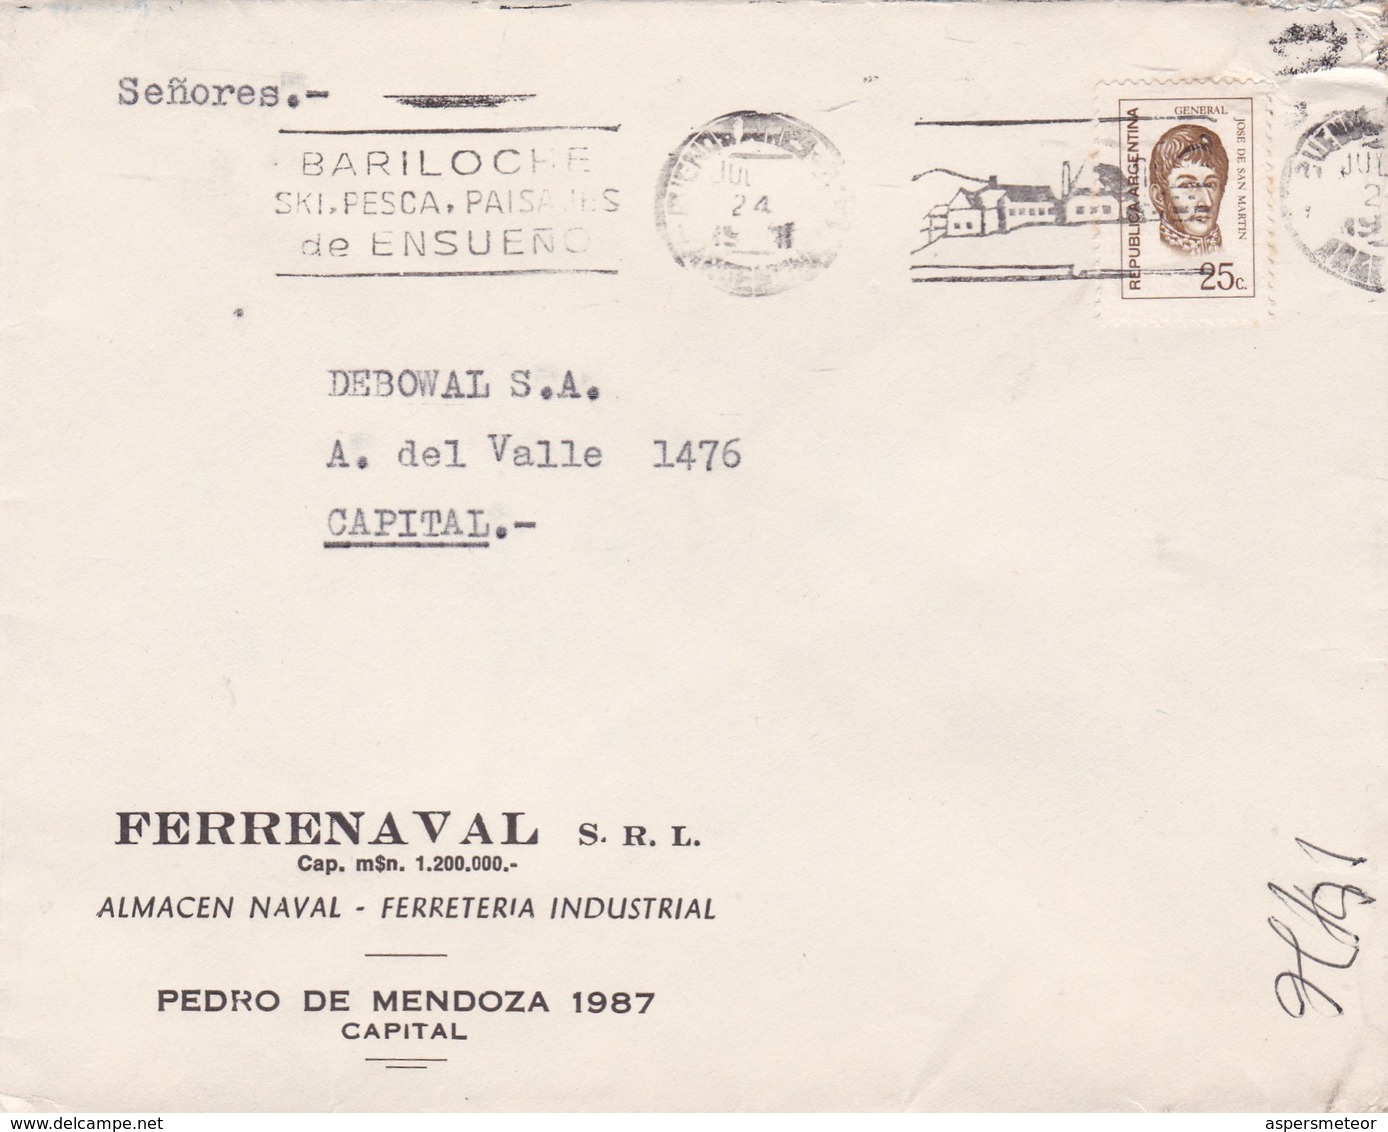 FERRENAVAL SRL- ENVELOPPE CIRCULEE BUENOS AIRES 1972 BANDELETA PARLANTE: BARILOCHE, SKI PESCA PAISAJES DE ENSUEÑ - BLEUP - Cartas & Documentos